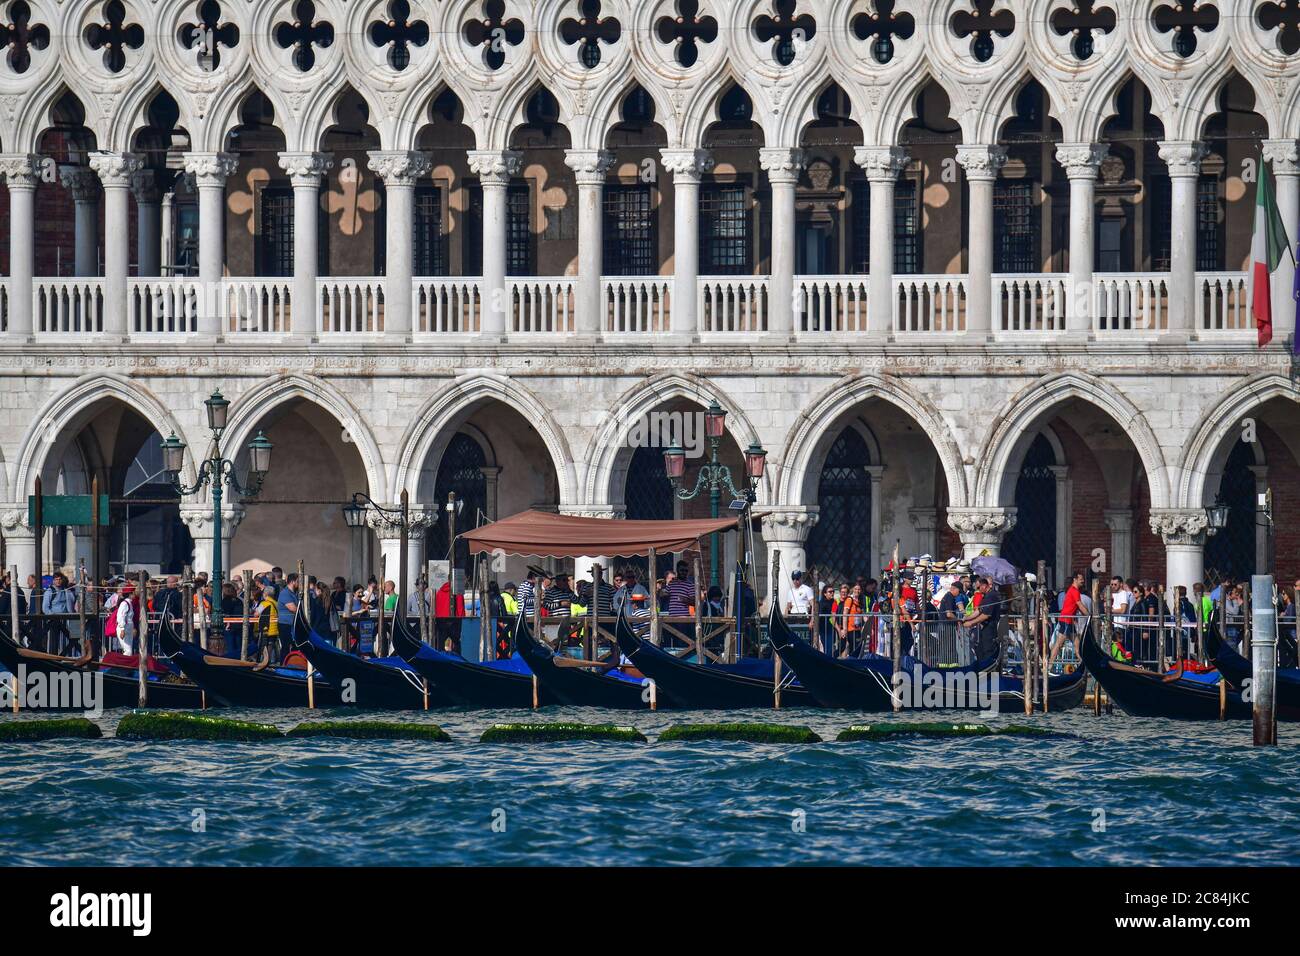 Italien: Venedig. Piazza San Marco (St. Mark'Square) von der Lagune aus gesehen. Gondeln für Touristen am Kai vor dem Dogenpalast. Stockfoto